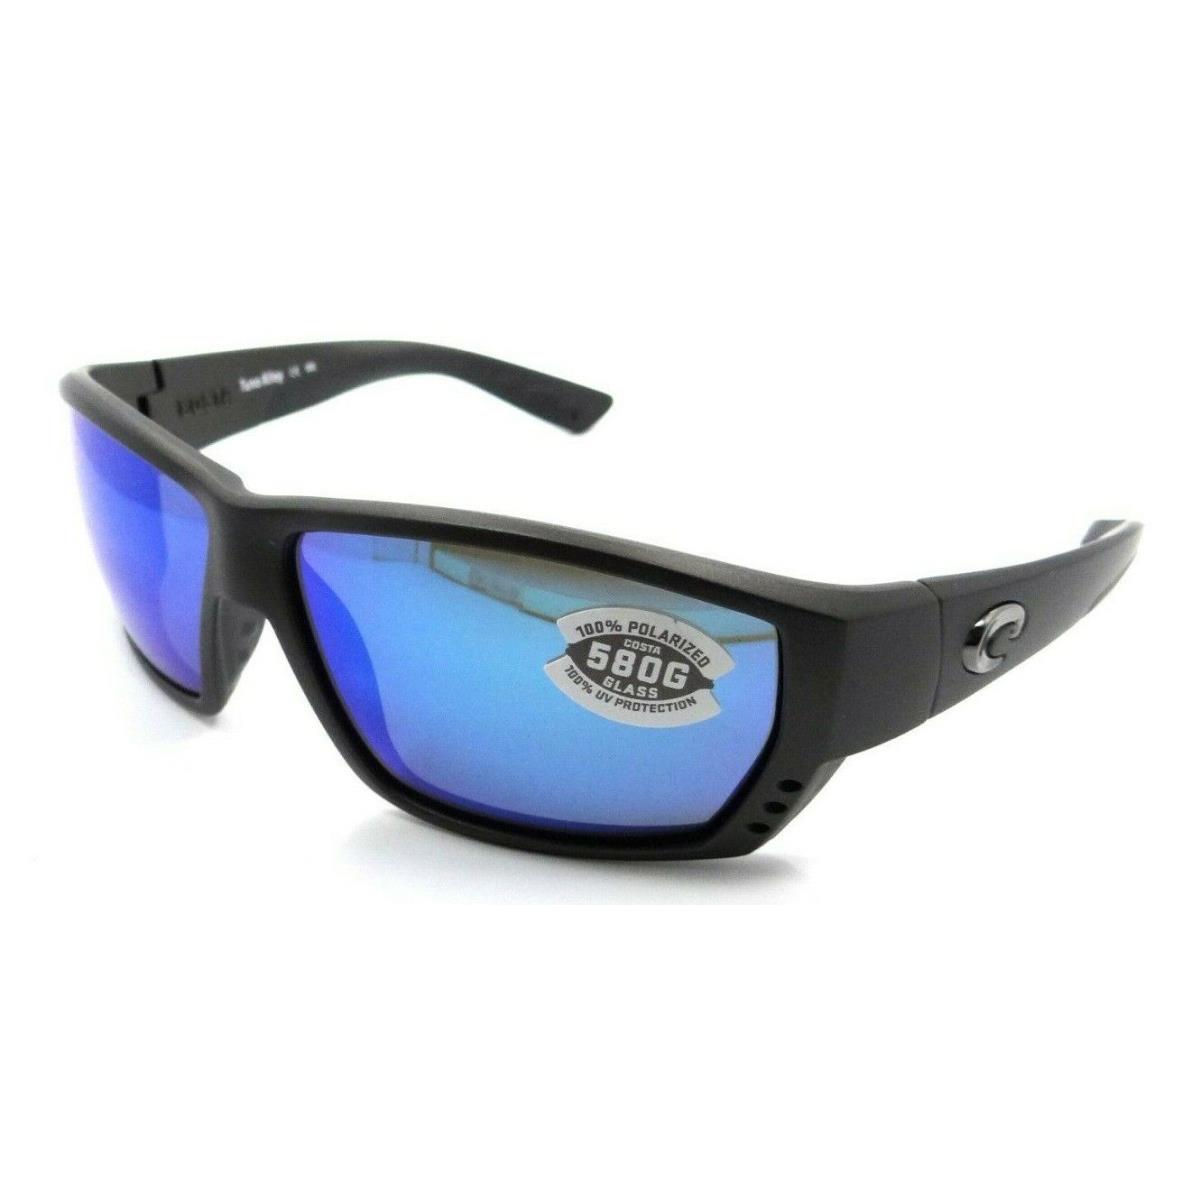 Costa Del Mar Sunglasses Tuna Alley 62-11-125 Matte Steel/blue Mirror 580G Glass - Gray Frame